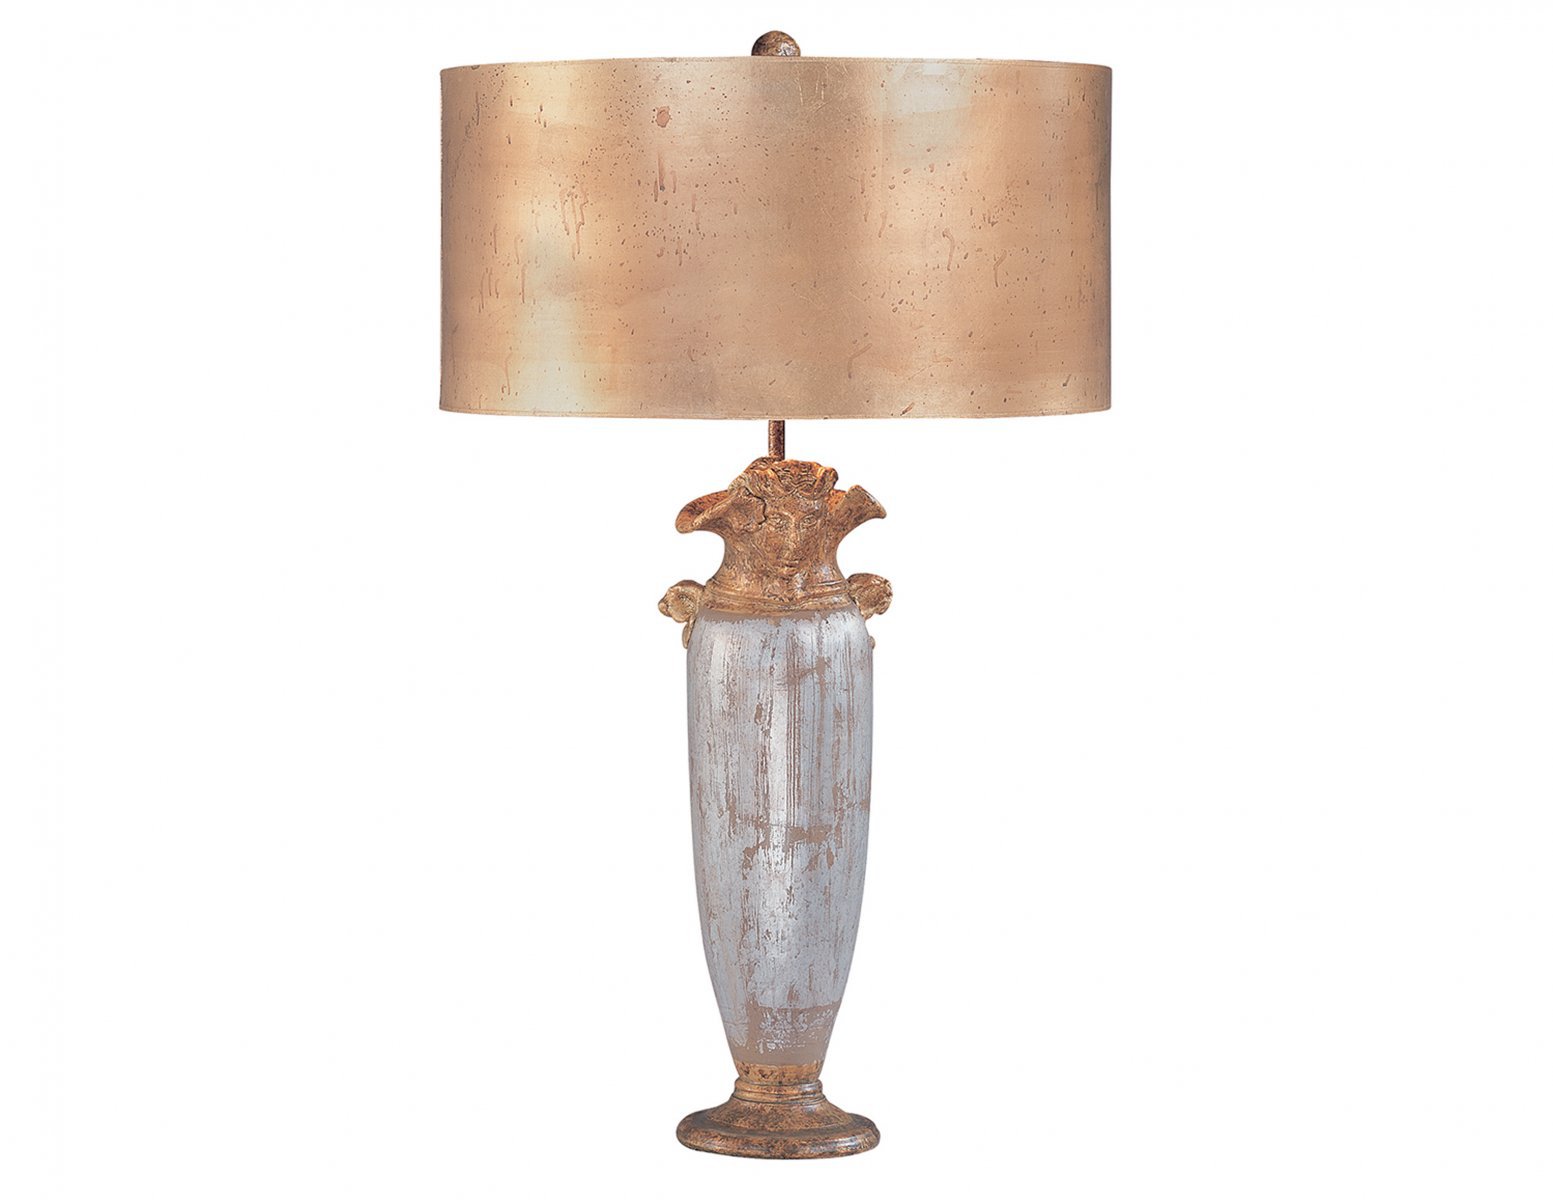 Lampa stołowa nocna stylizowana na antyk malowana w odcieniu złota i srebra